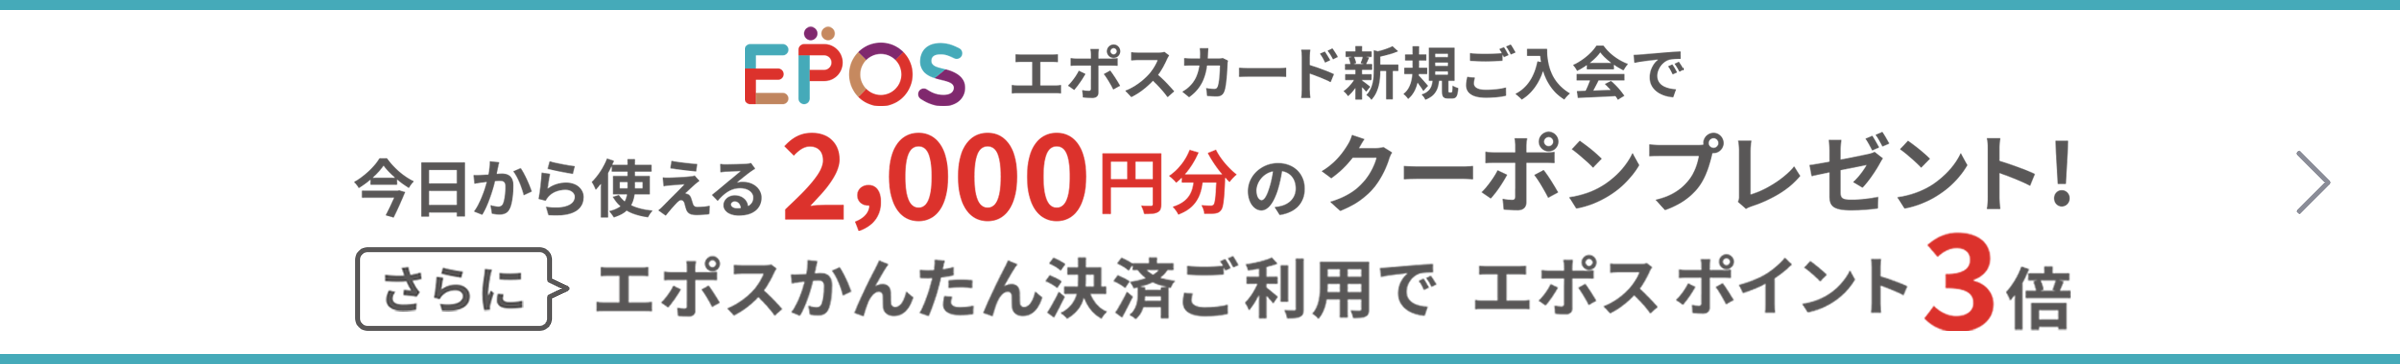 EPOS エポスカード新規ご入会で今日から使える2,000円のクーポンプレゼント 通常